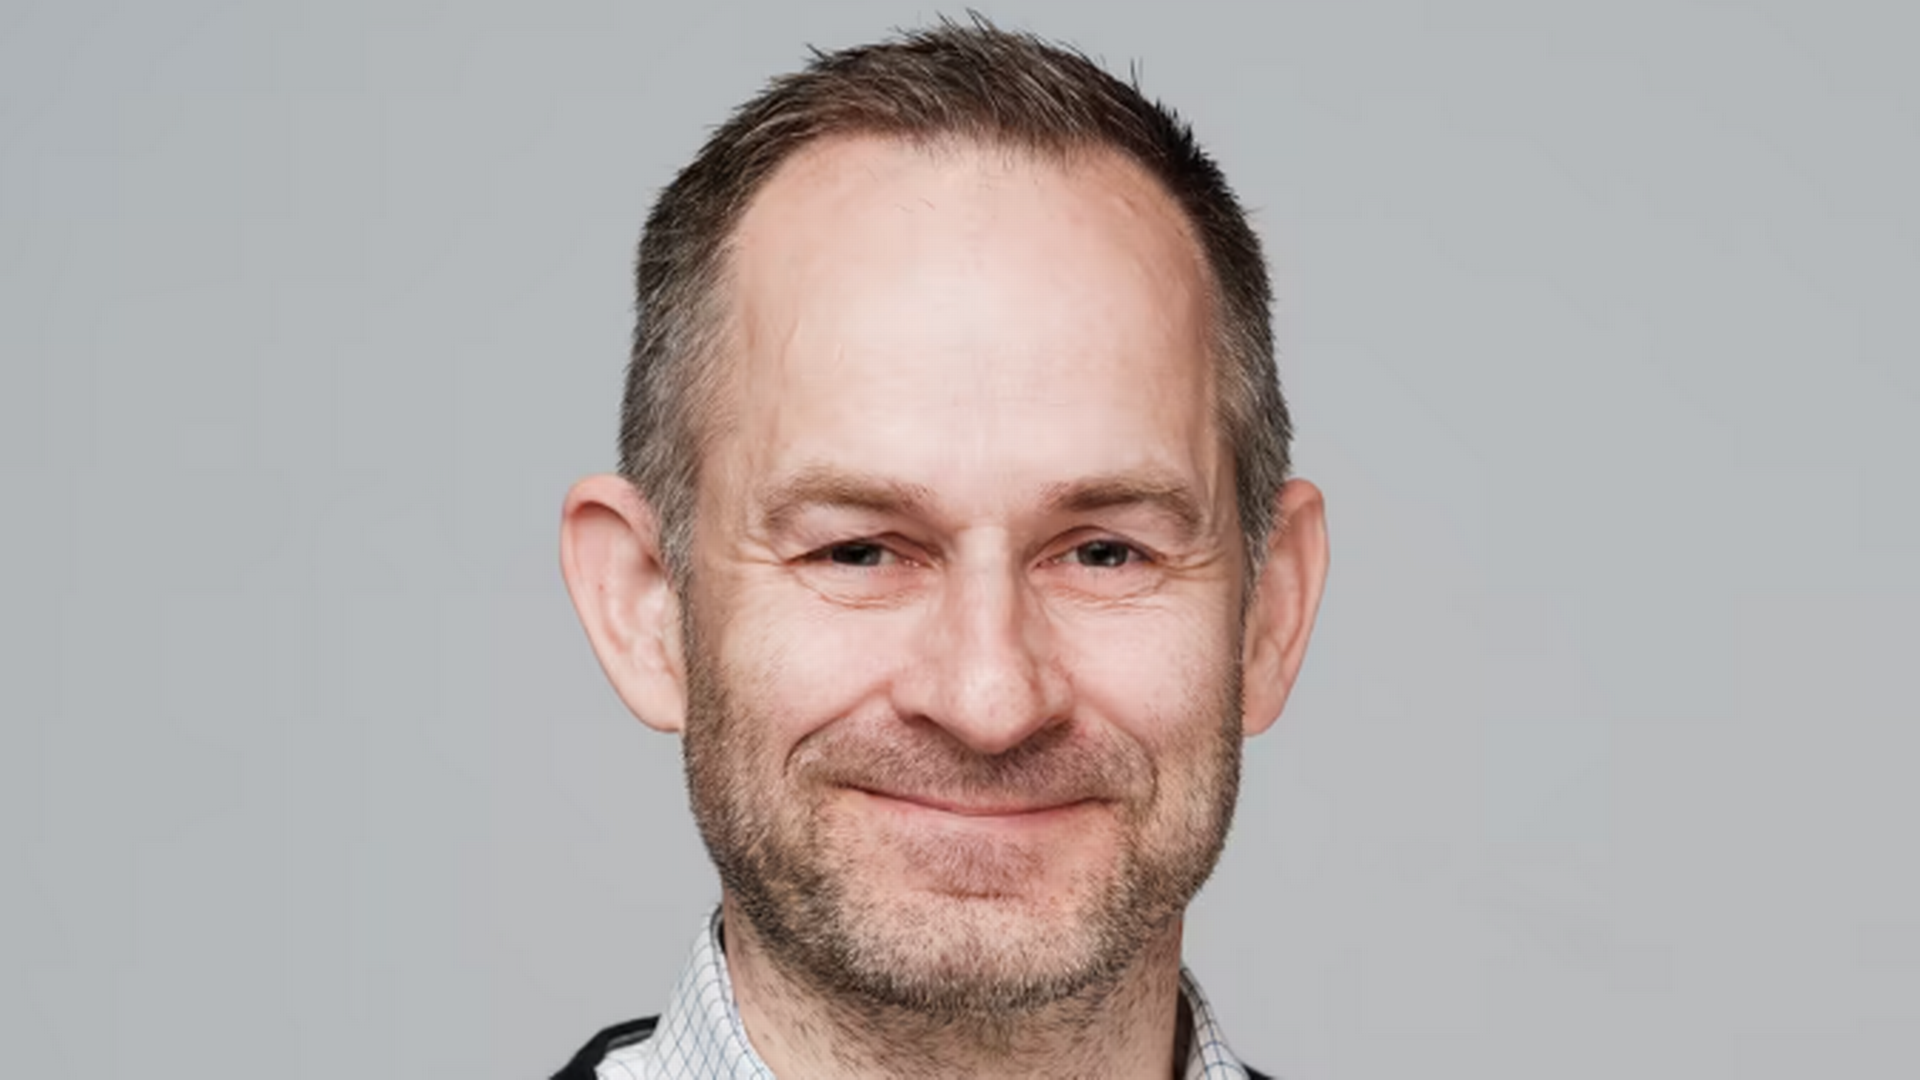 Geir Asle Rotabakk leder kundeavdelingen i Tensio. Han har jobbet i nettselskapet siden juli 2019. | Foto: Tensio